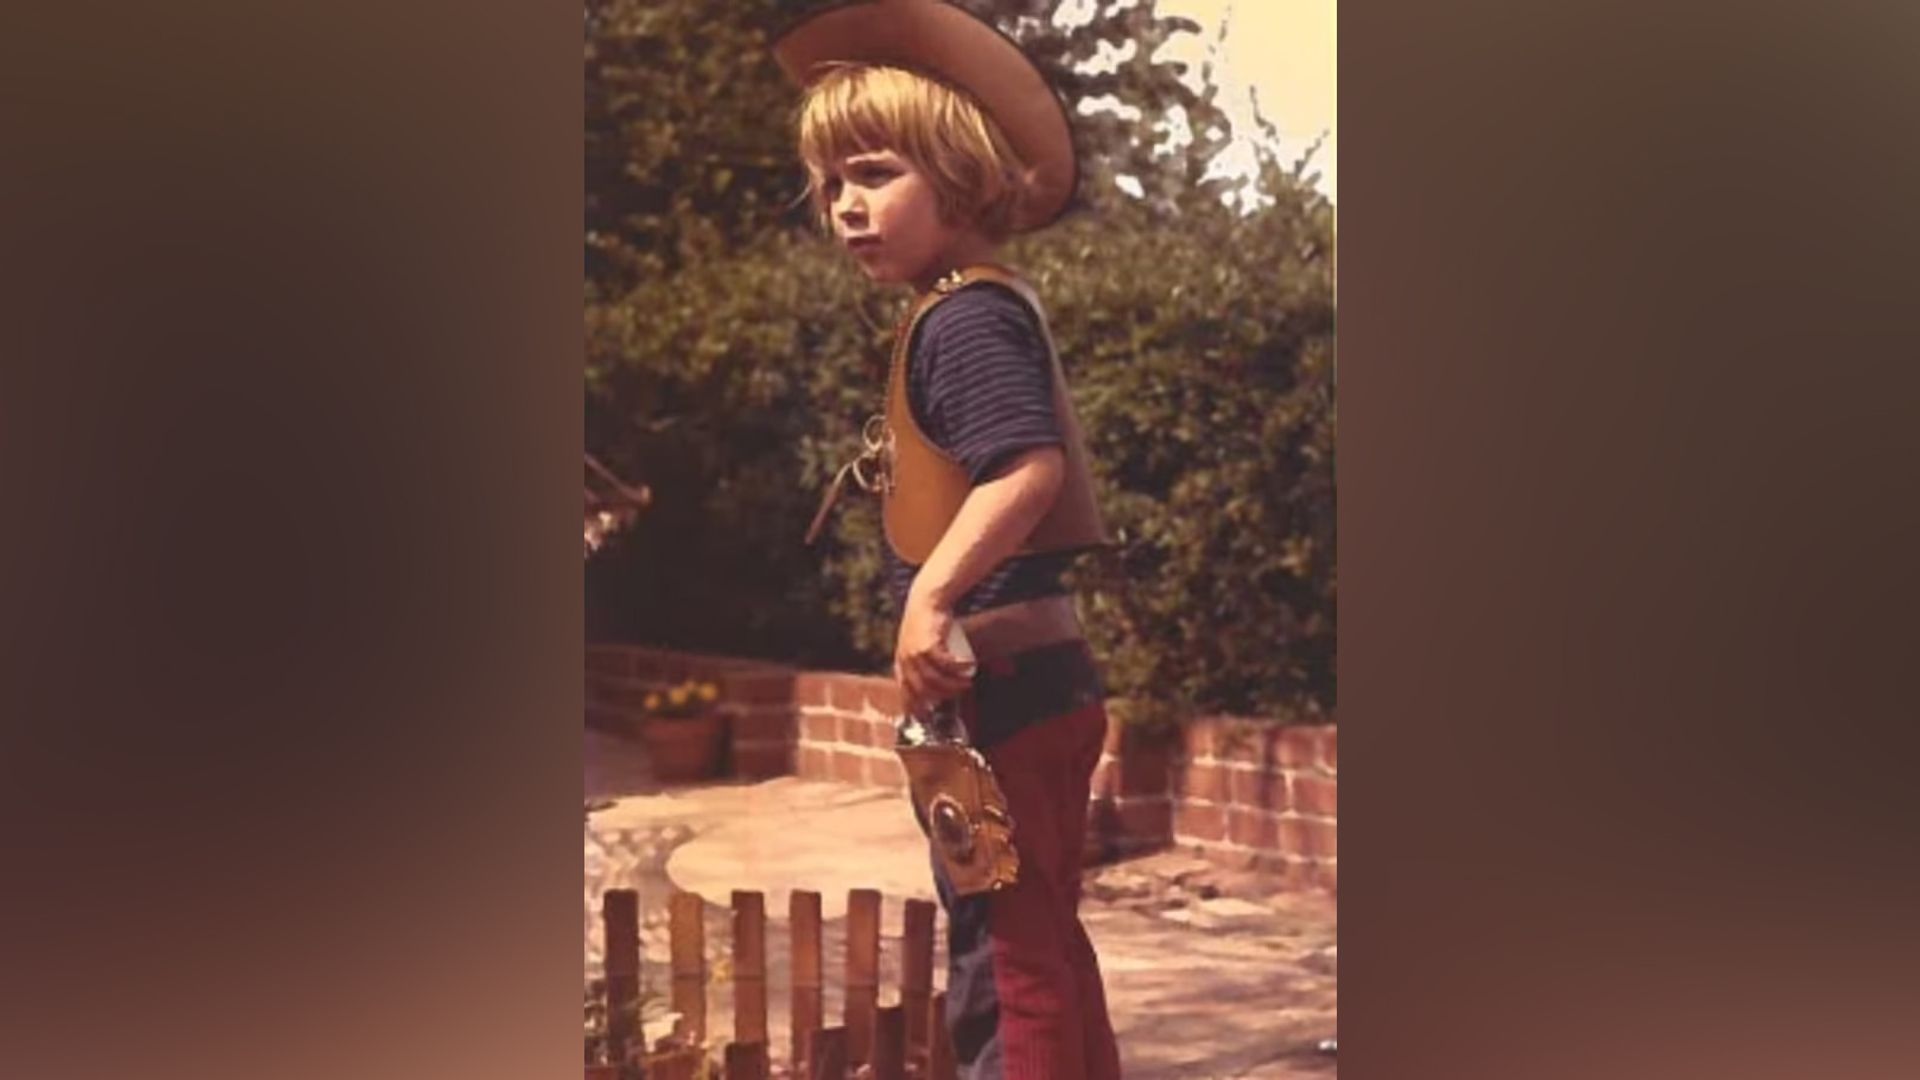 Tucker Carlson as a child